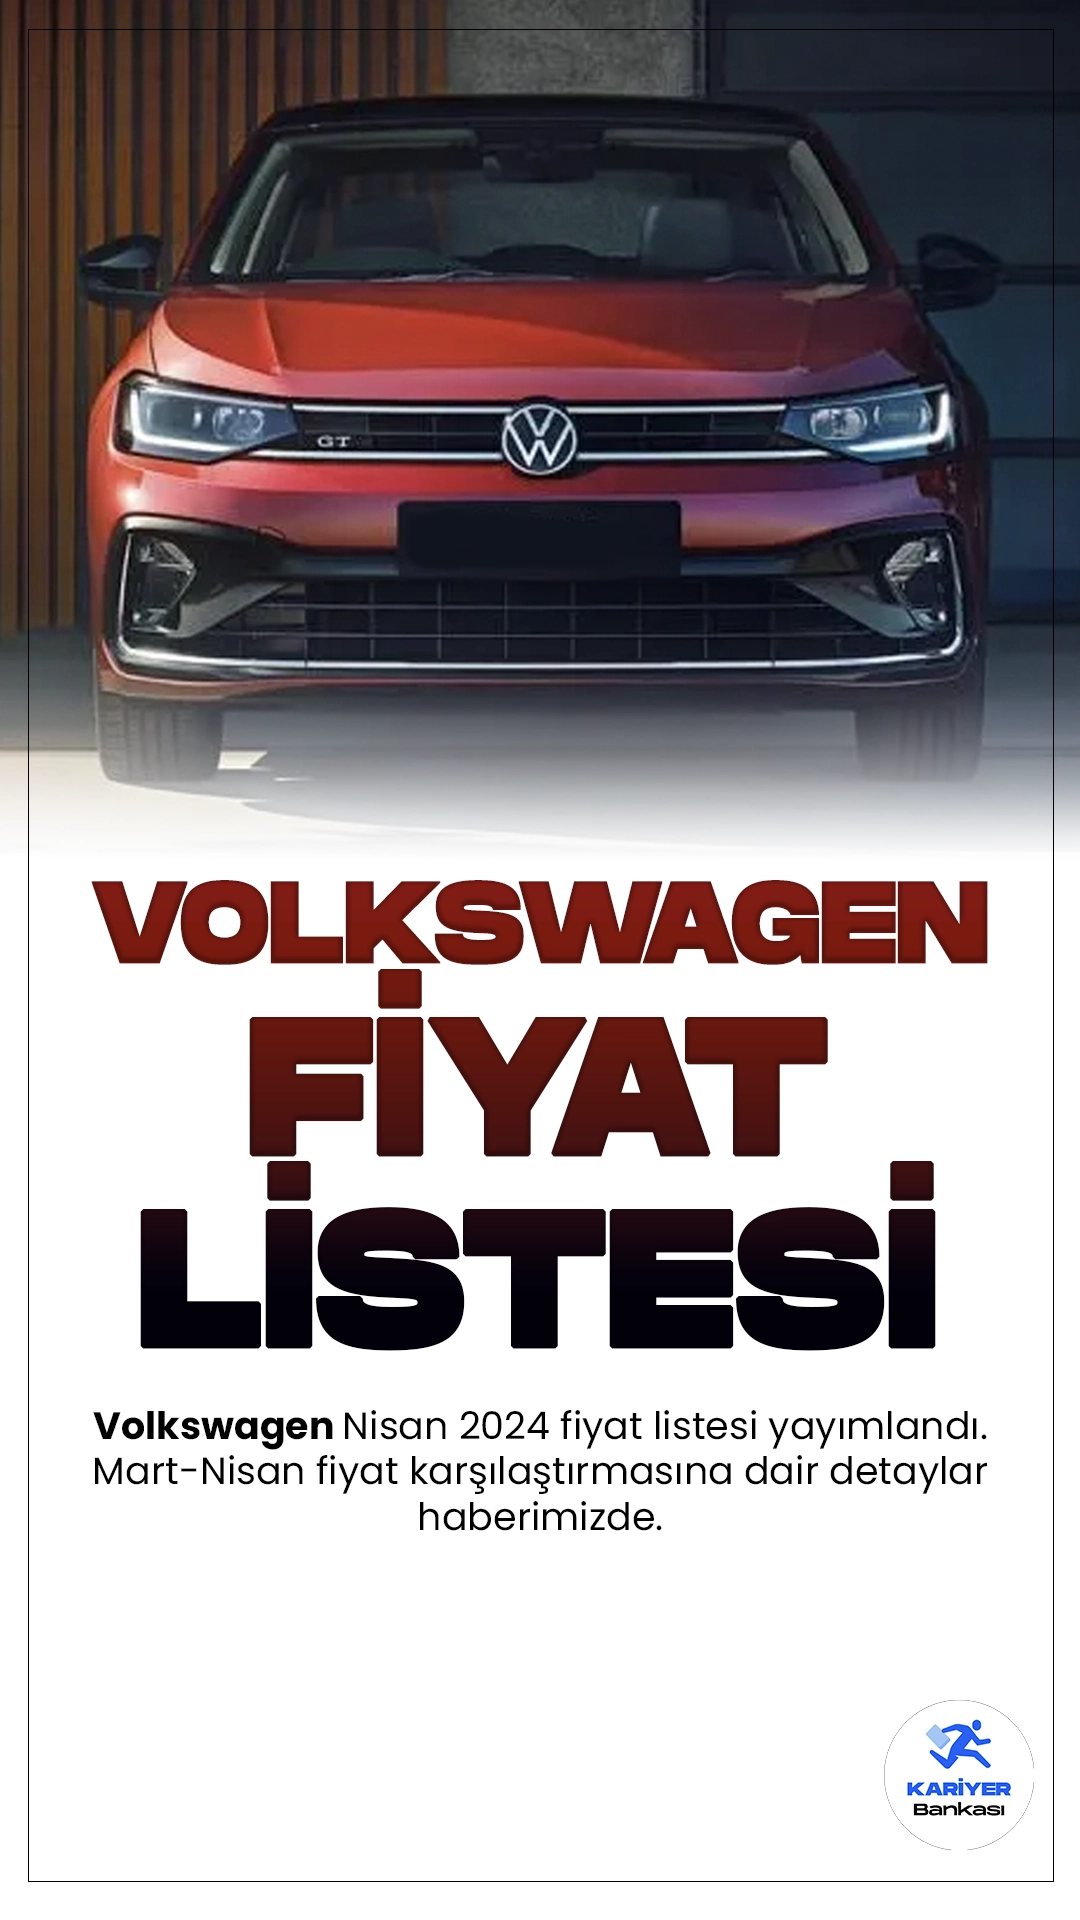 Volkswagen Nisan 2024 Fiyat Listesi Yayımlandı.Volkswagen, 2024 yılında heyecan verici yeni modelleriyle otomobil pazarında büyük bir hareketlilik yaratmaya hazırlanıyor. Alman otomotiv devi, geniş ürün yelpazesindeki çeşitliliği artırmak ve müşterilere daha fazla seçenek sunmak için dikkat çekici araçlarını yenilemeye devam ediyor.